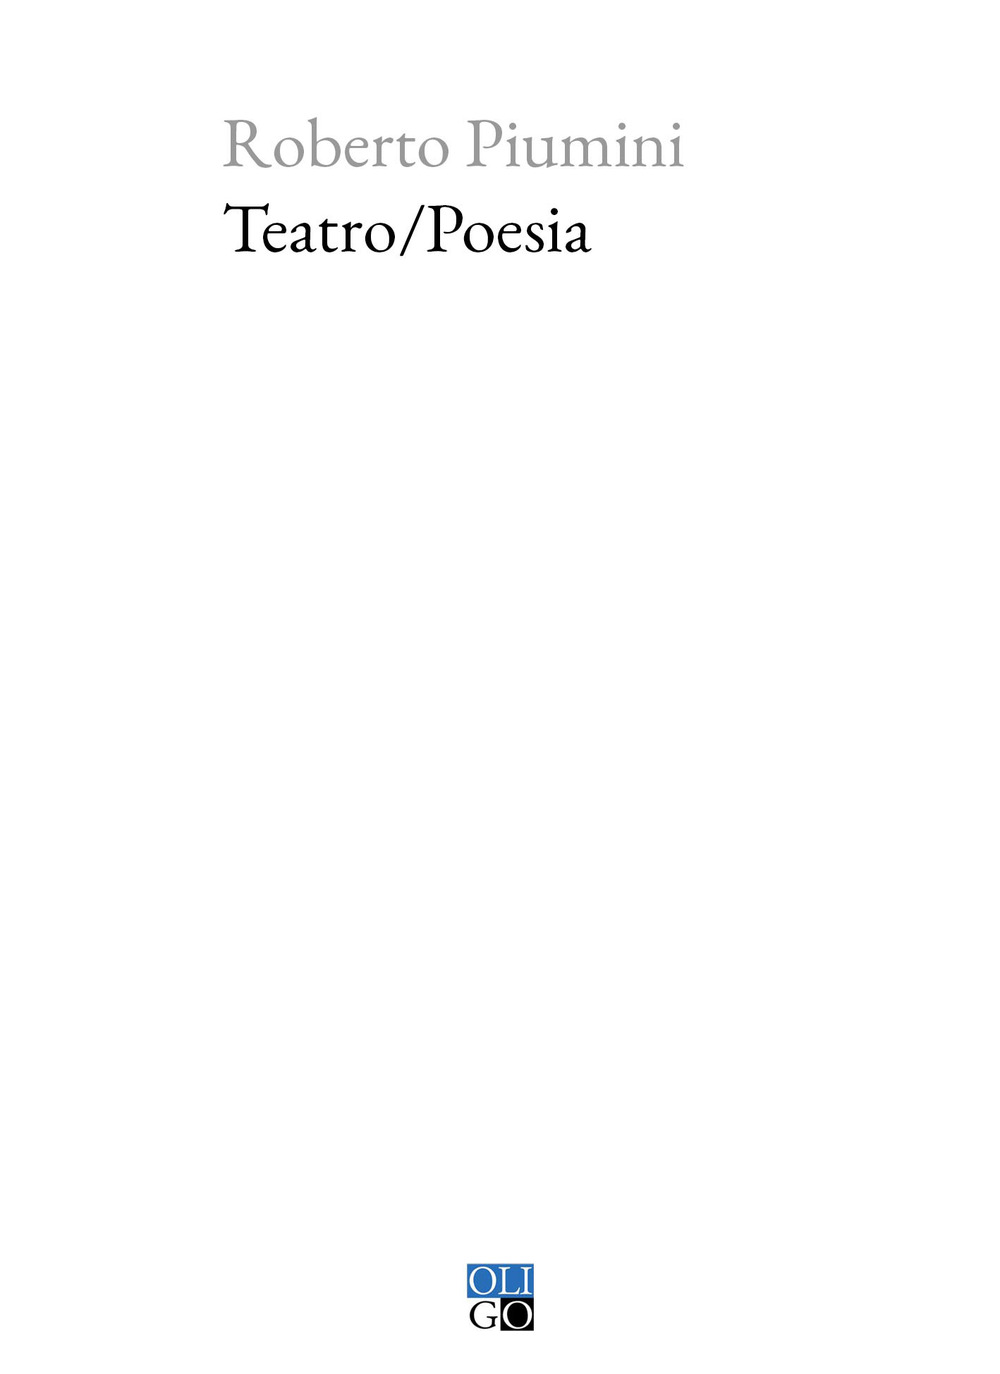 Image of Teatro/poesia